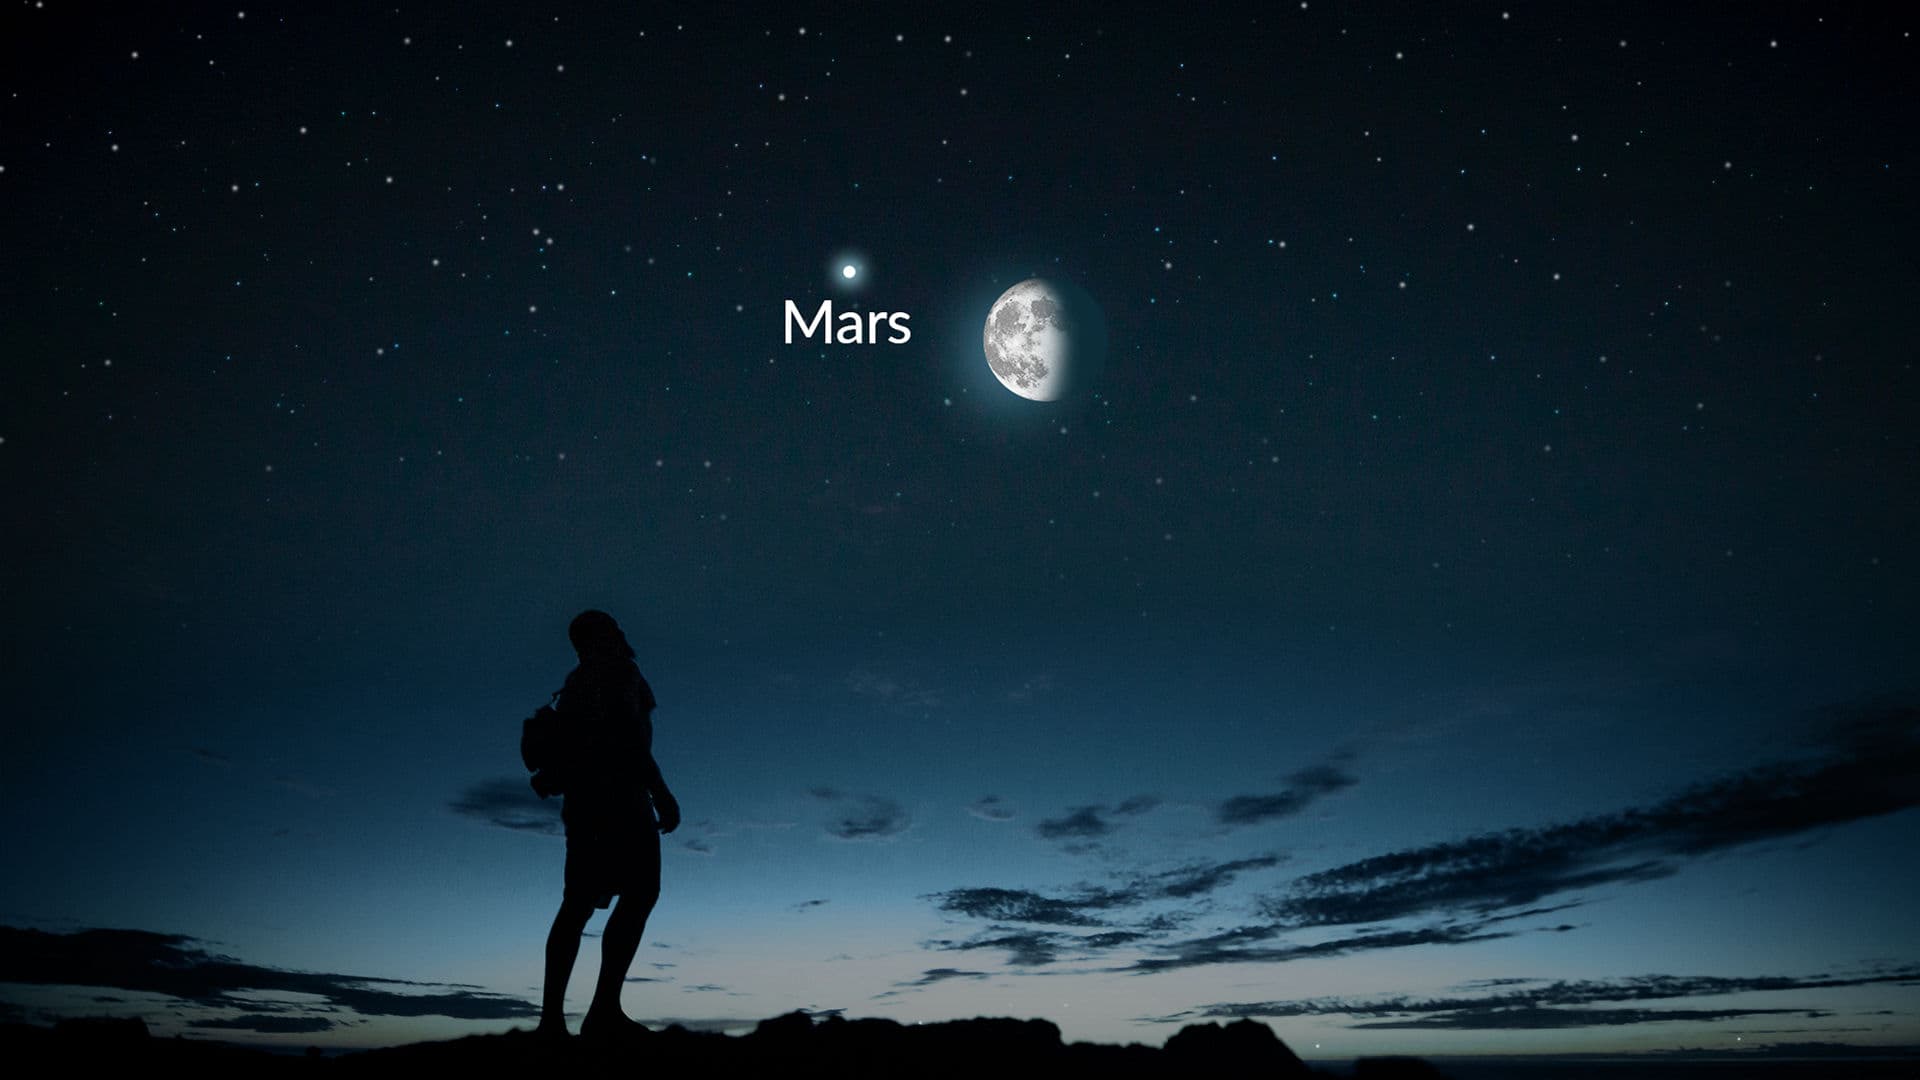 Maan, Mars en meer